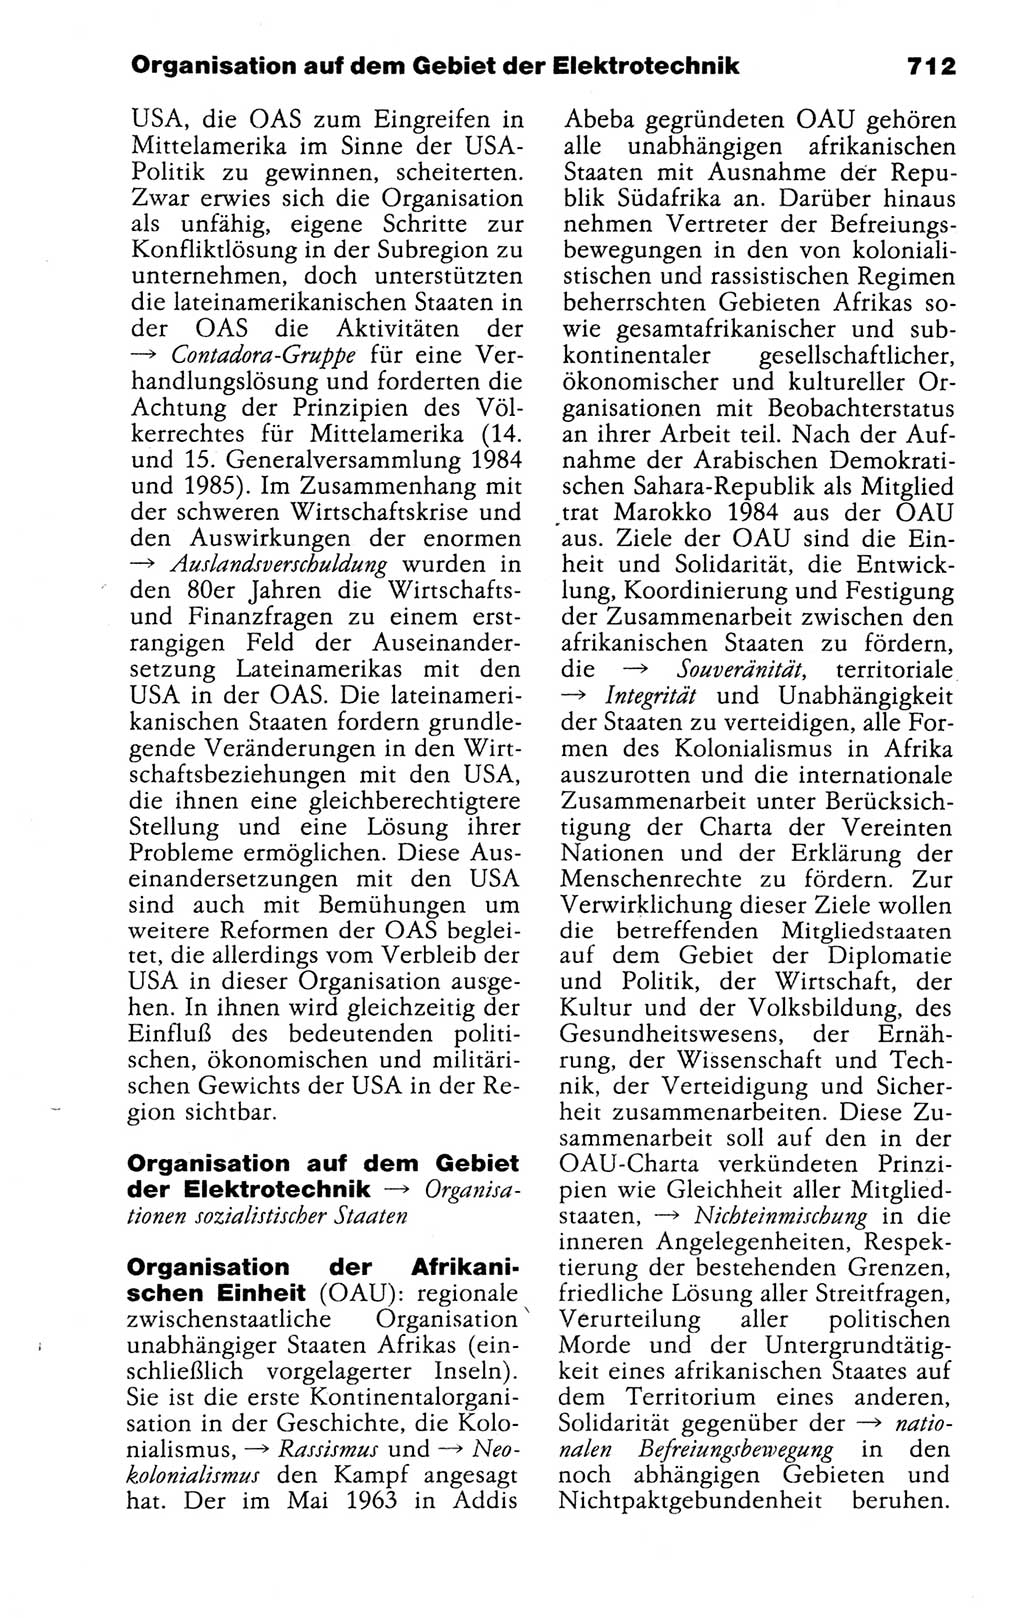 Kleines politisches Wörterbuch [Deutsche Demokratische Republik (DDR)] 1988, Seite 712 (Kl. pol. Wb. DDR 1988, S. 712)